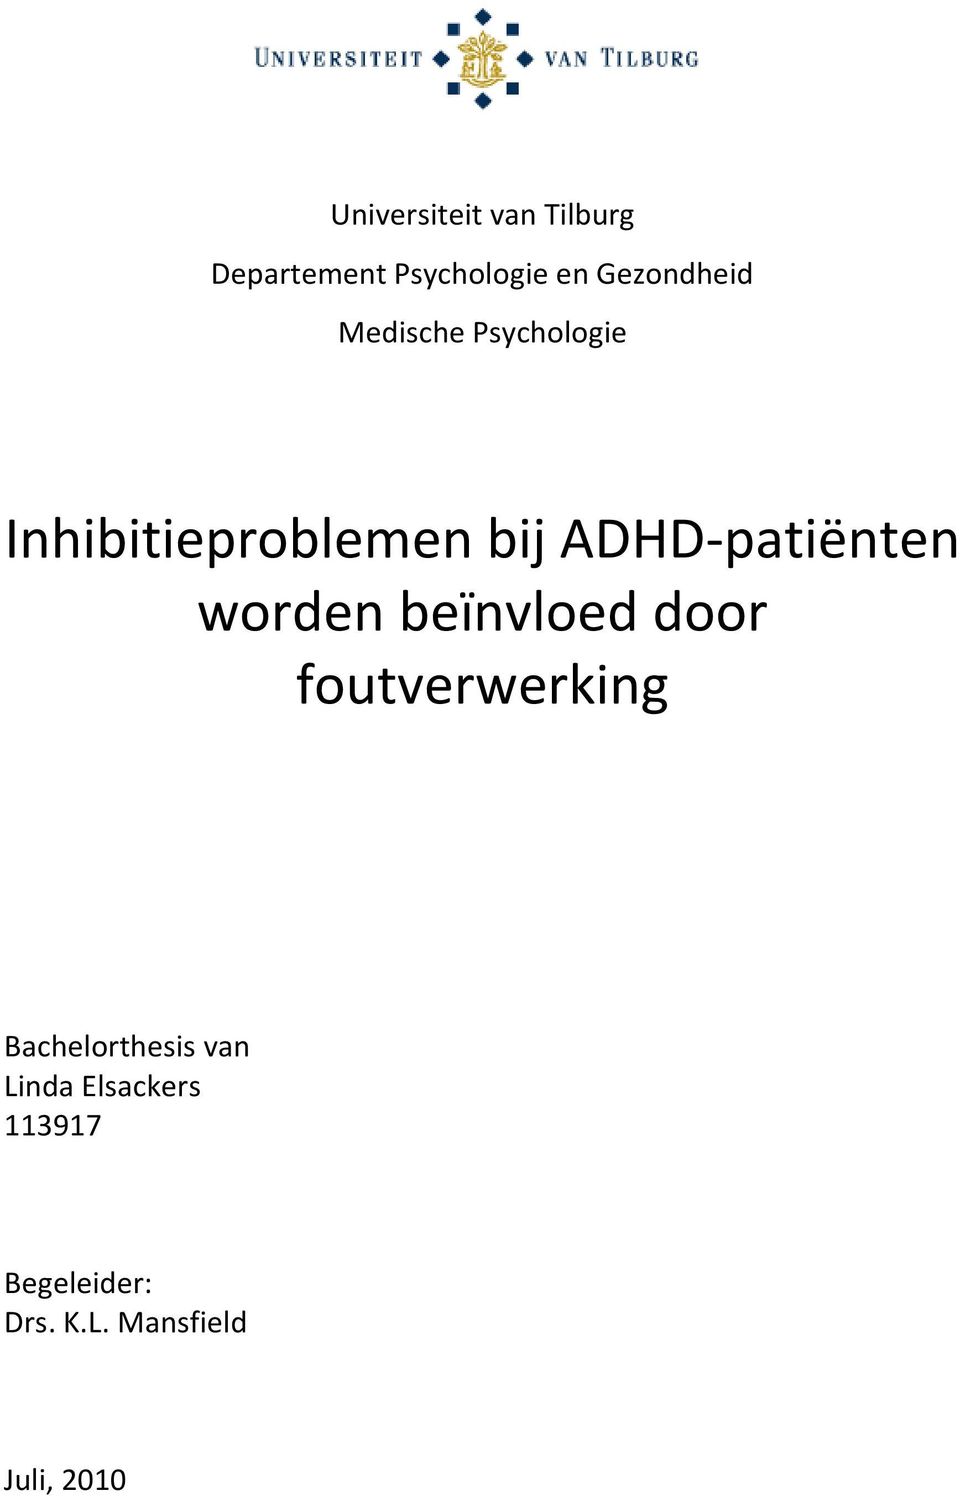 ADHD-patiënten worden beïnvloed door foutverwerking